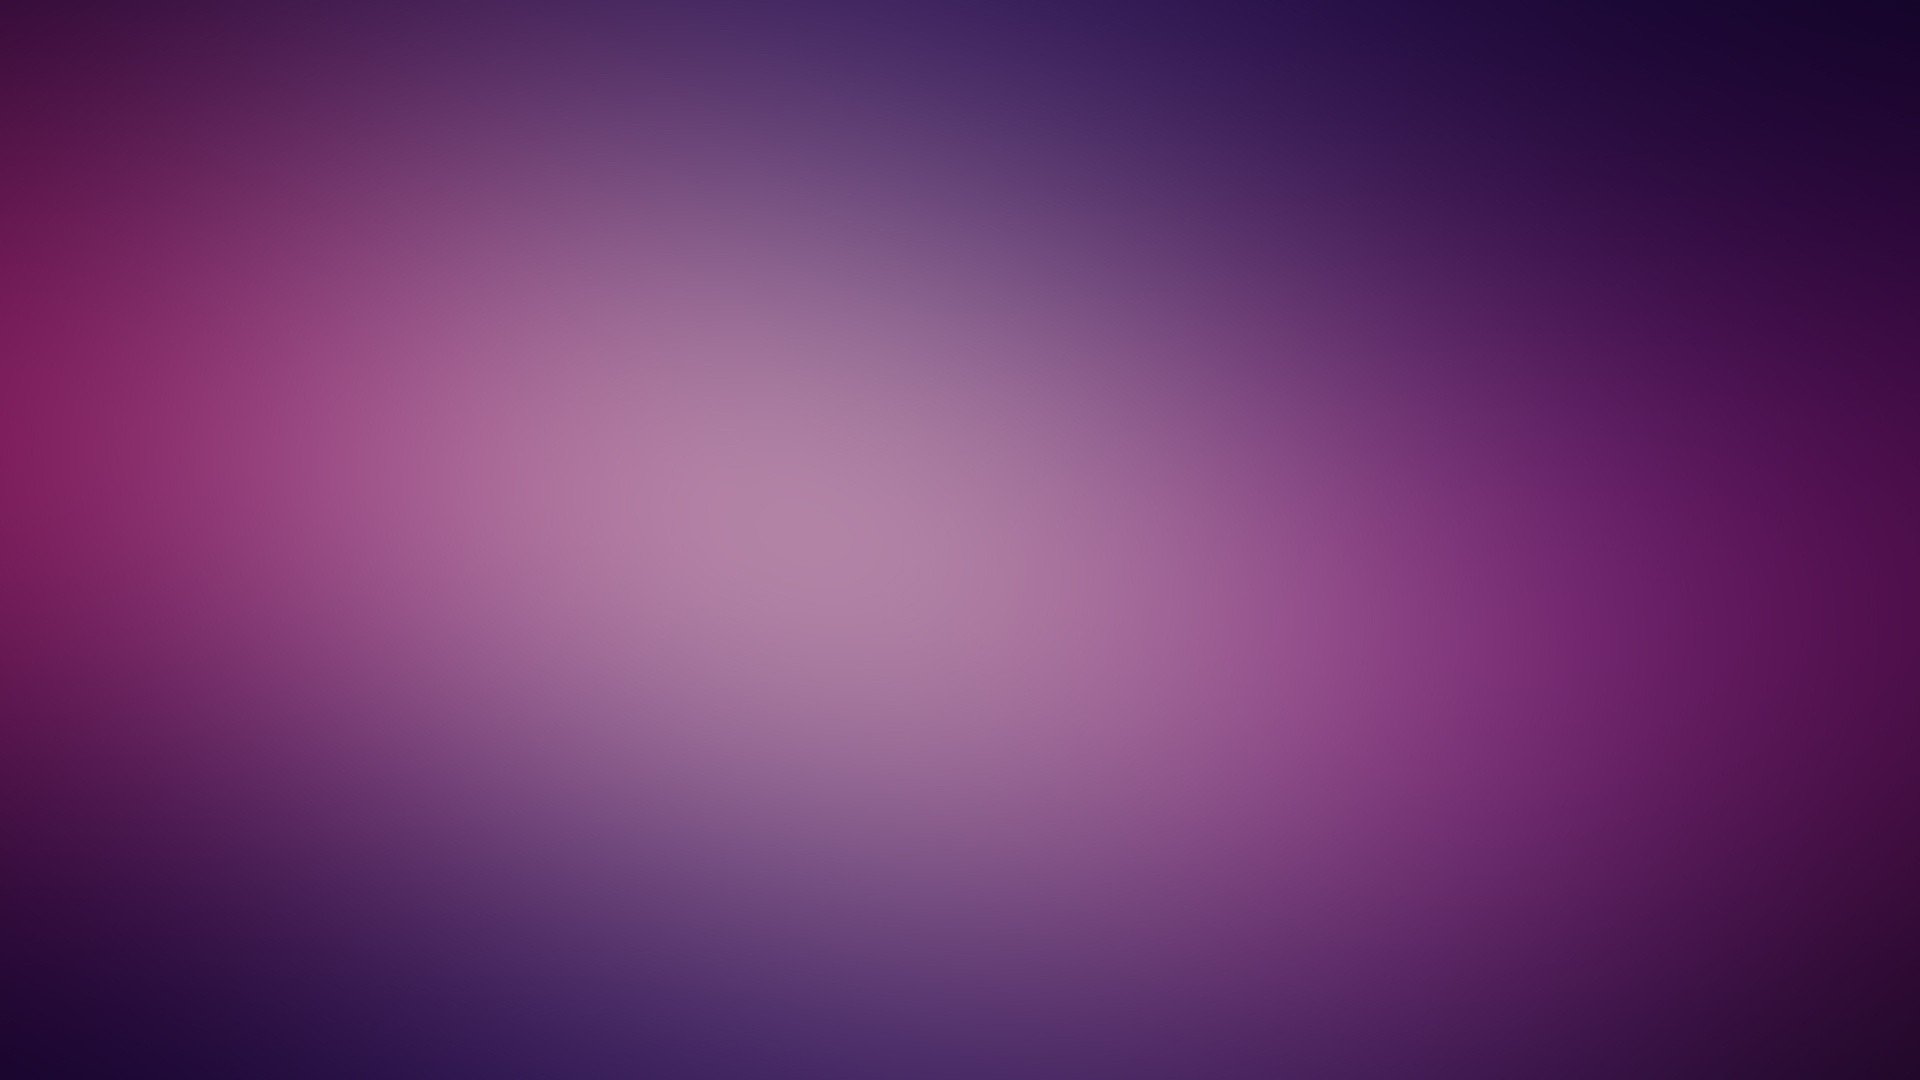 Minimalistic Funky Gaussian Blur Wallpaper